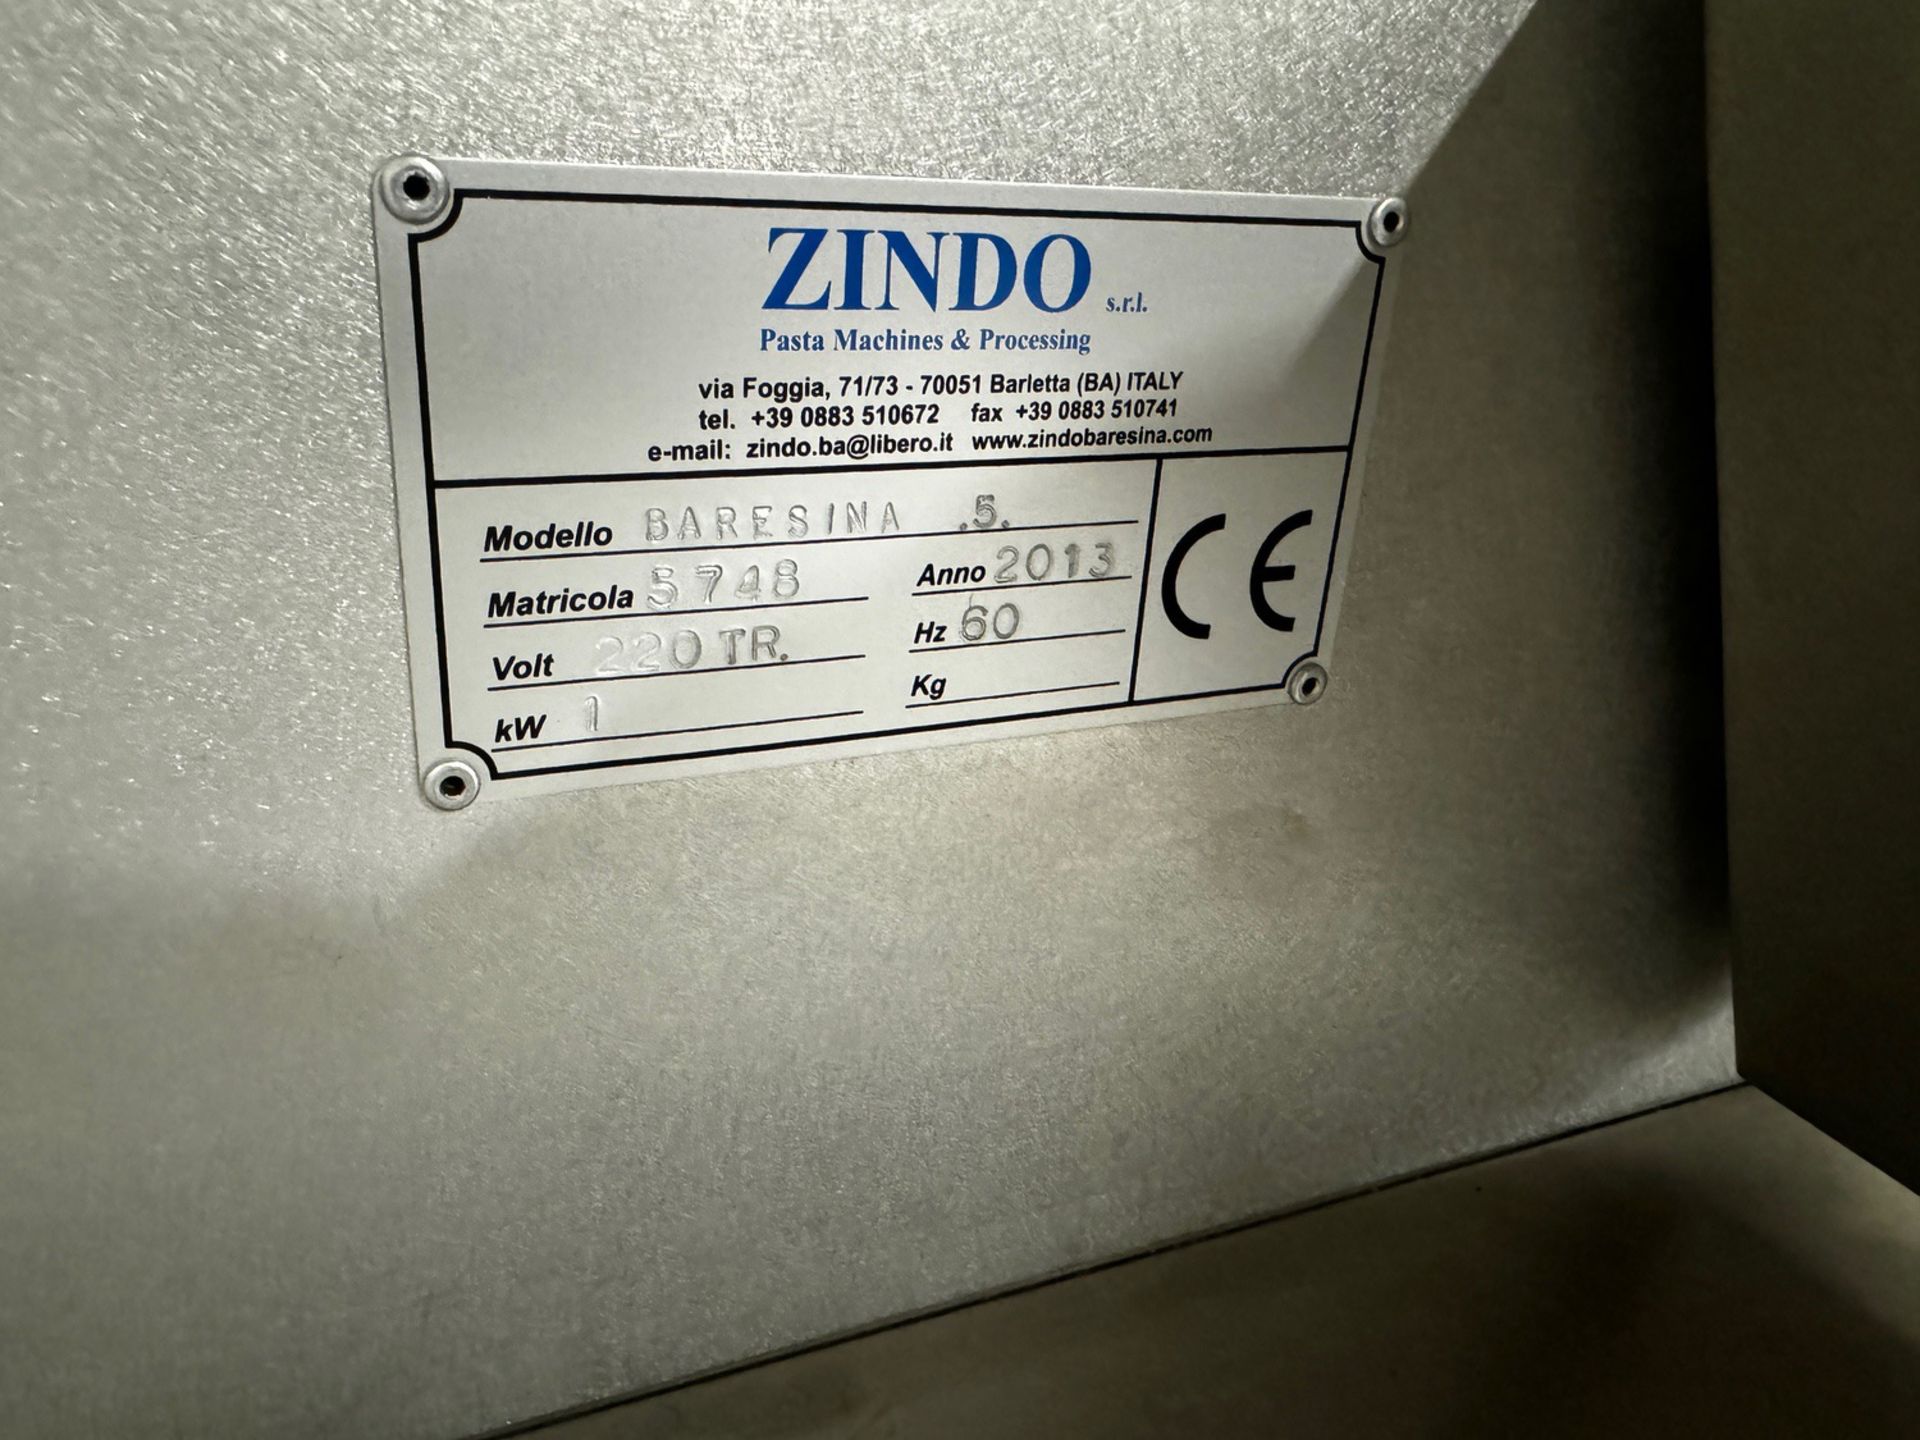 2013 Zindo Model BARESINA .5., S/N 5748 | Rig Fee $150 - Image 4 of 4